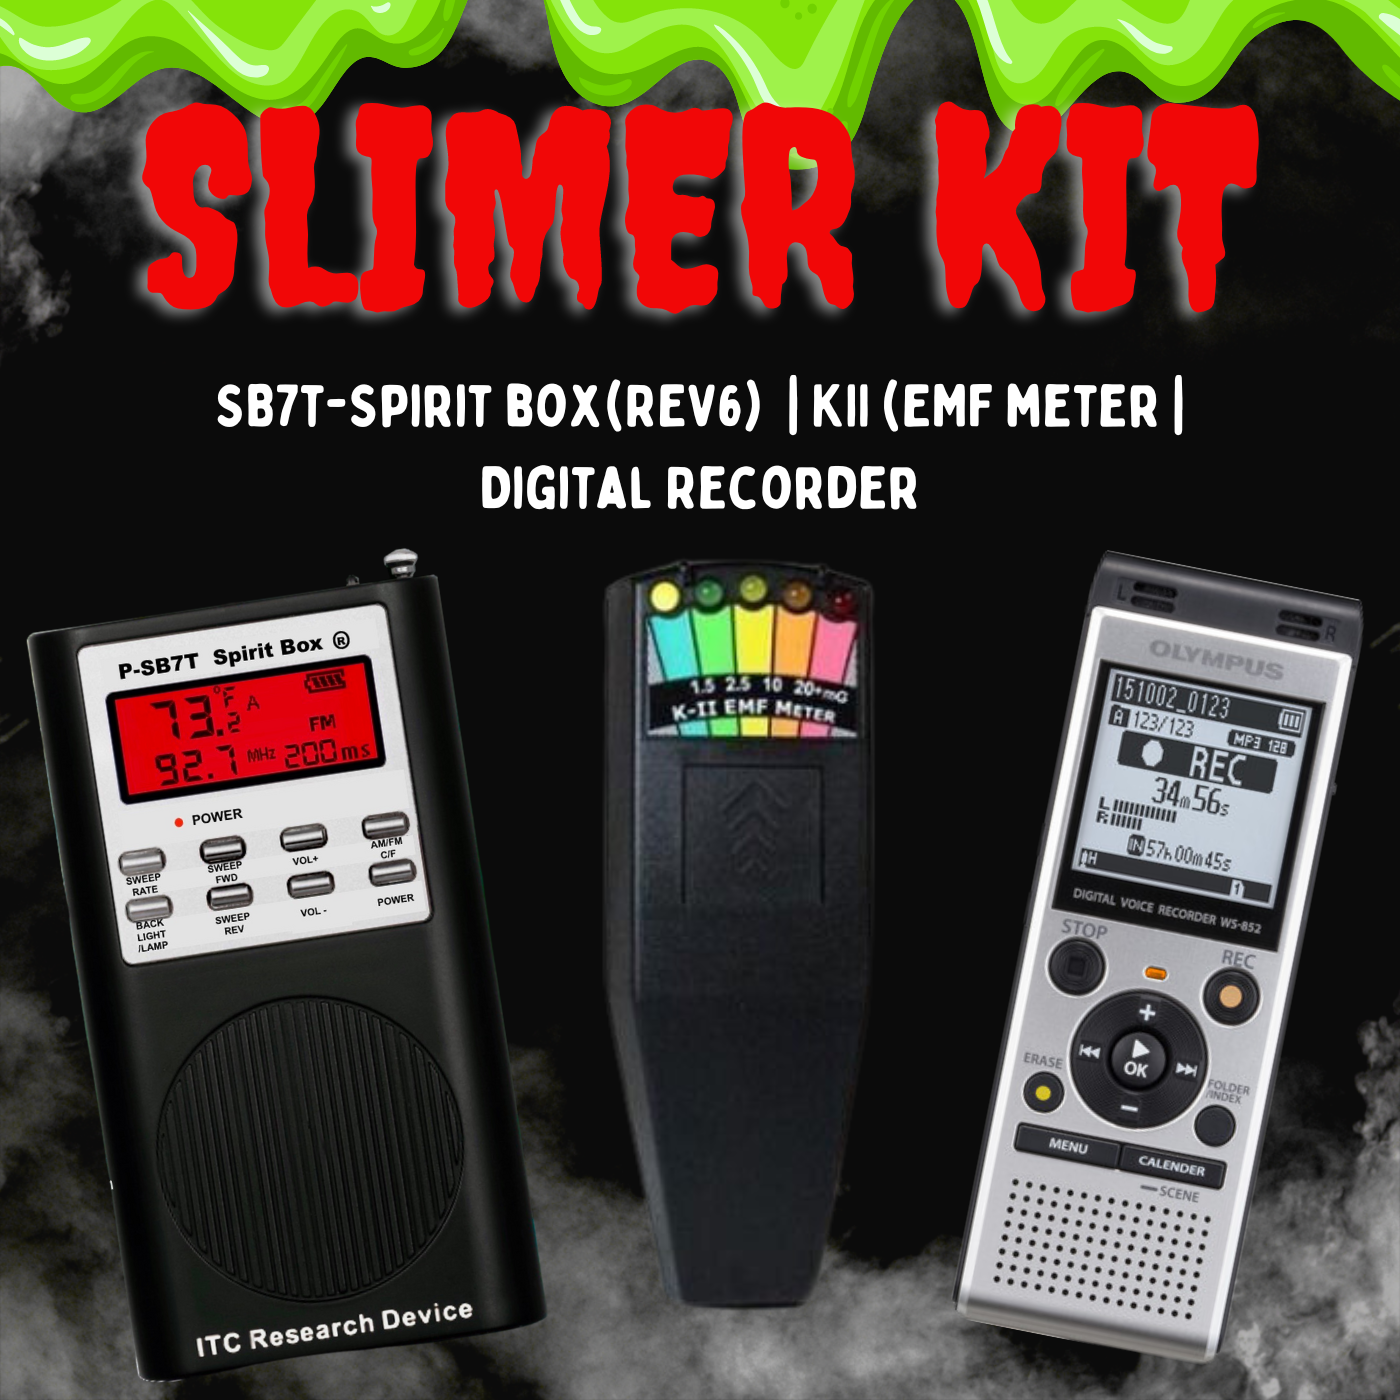 SLIMER kit Olympus EVP recorder (NEW MODEL), KII EMF meter, SB7T(Rev6 –  OZParaTech